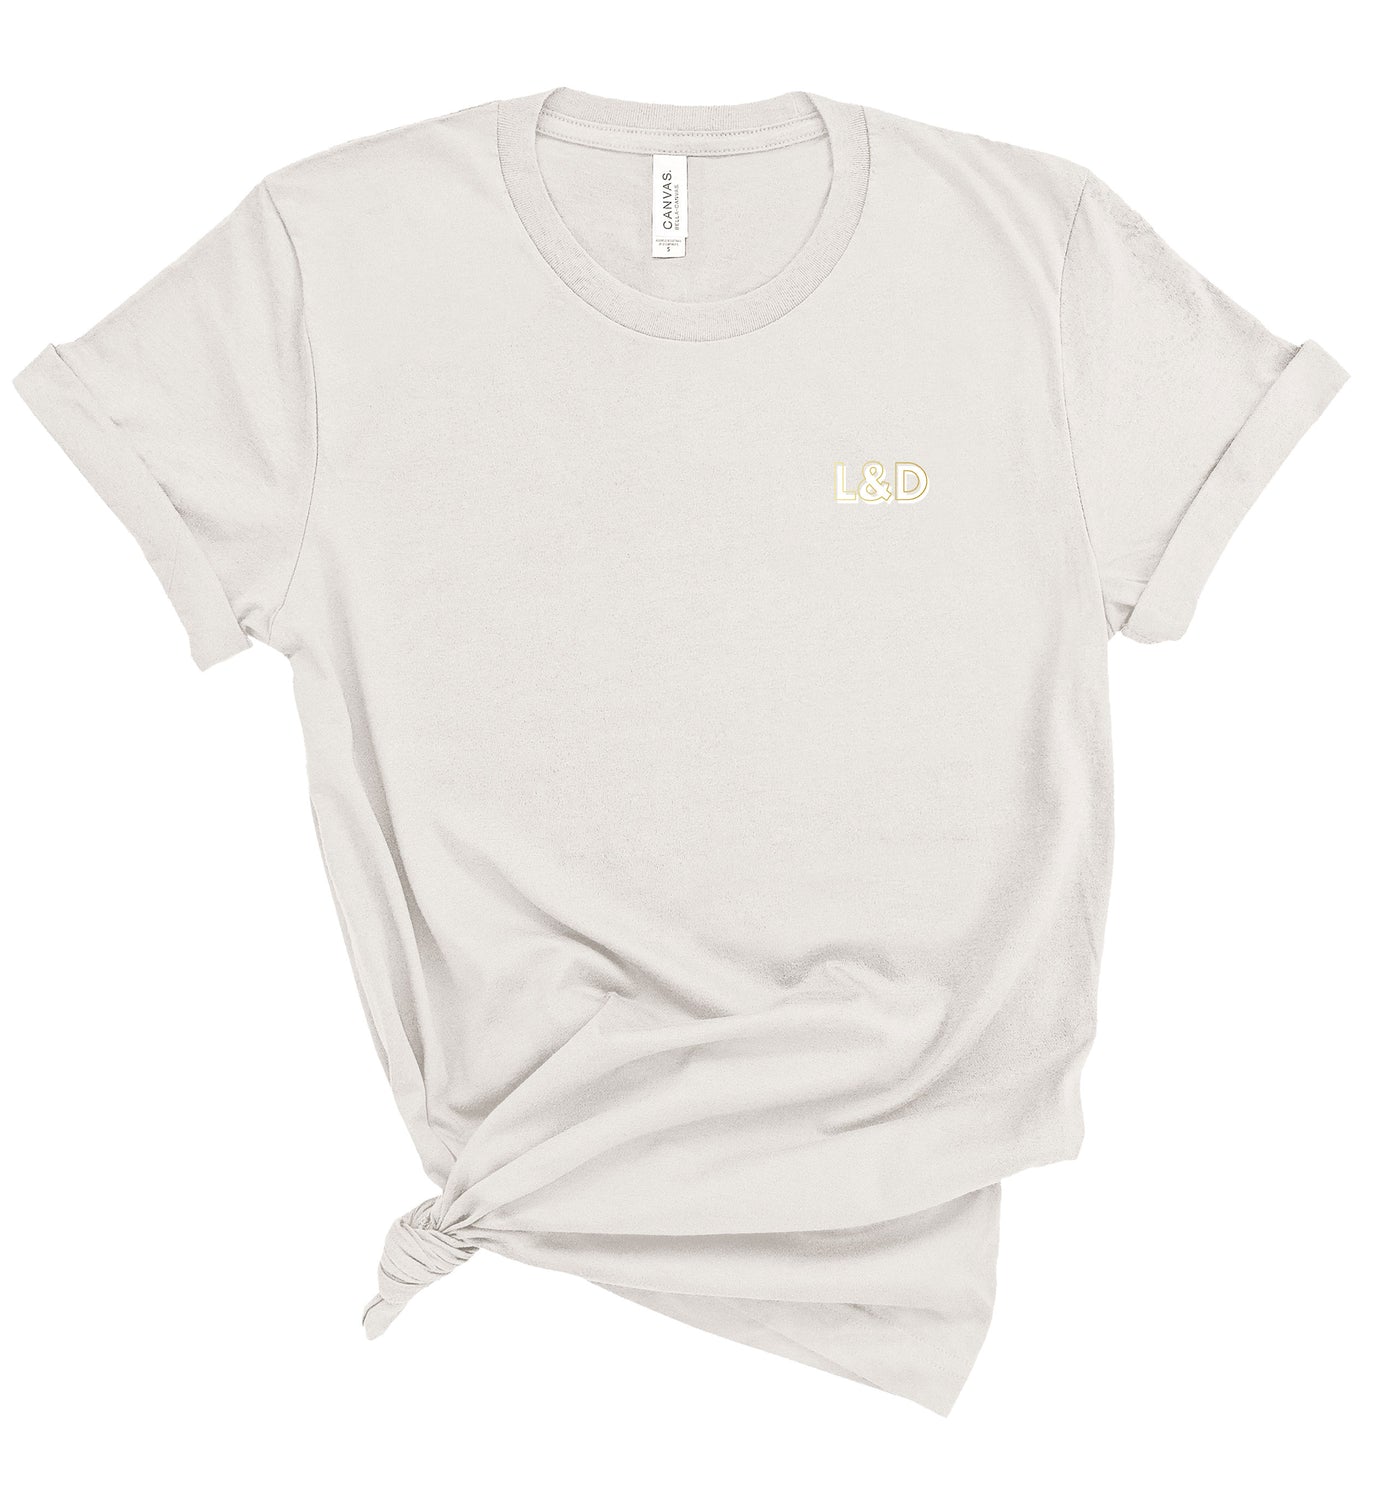 L&D Creds - Shirt